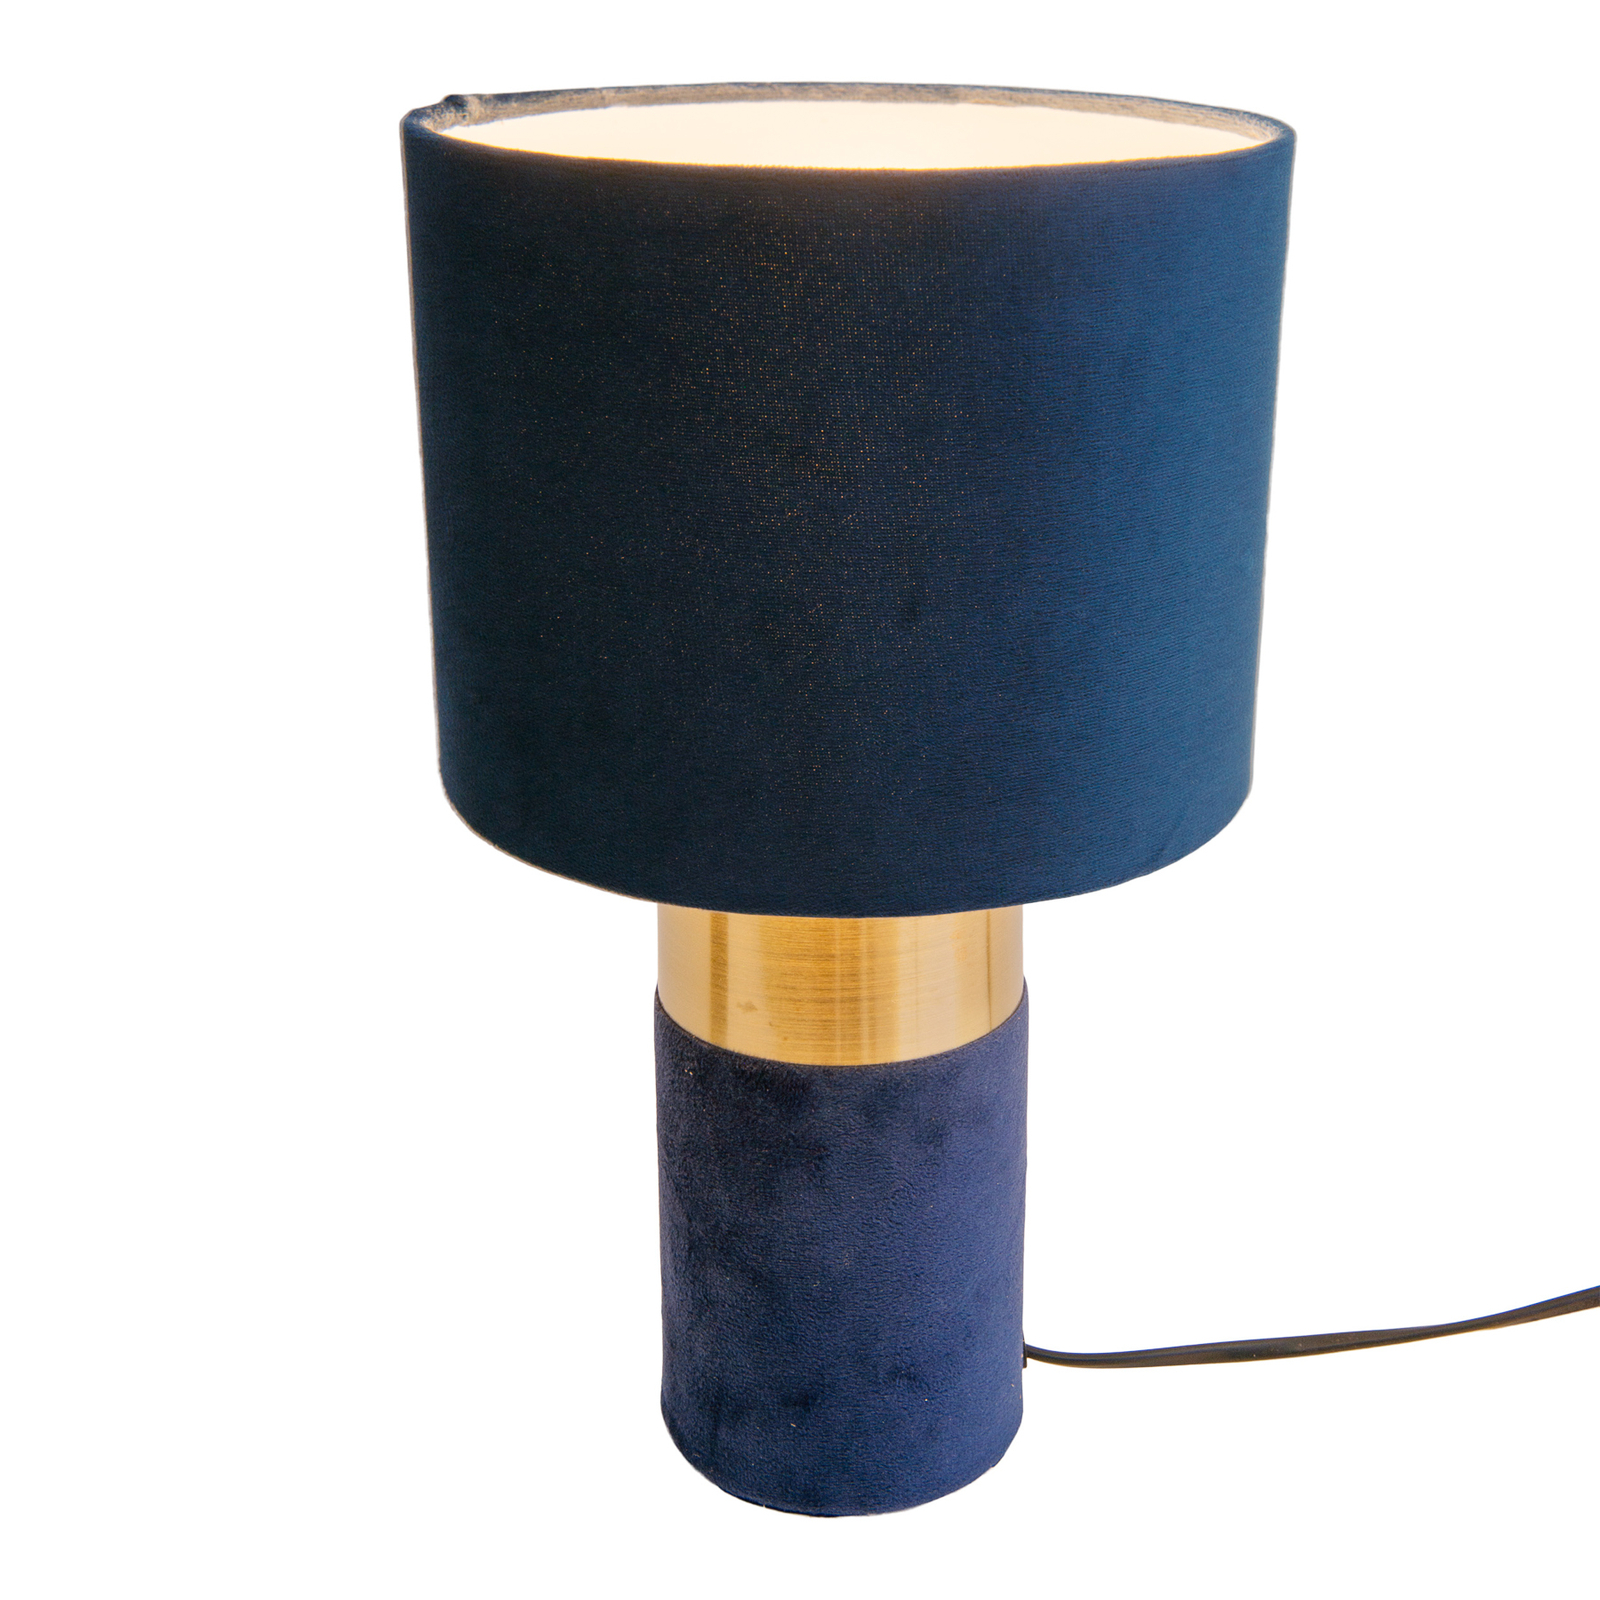 Stolová lampa 3189512, textilné tienidlo, modrá